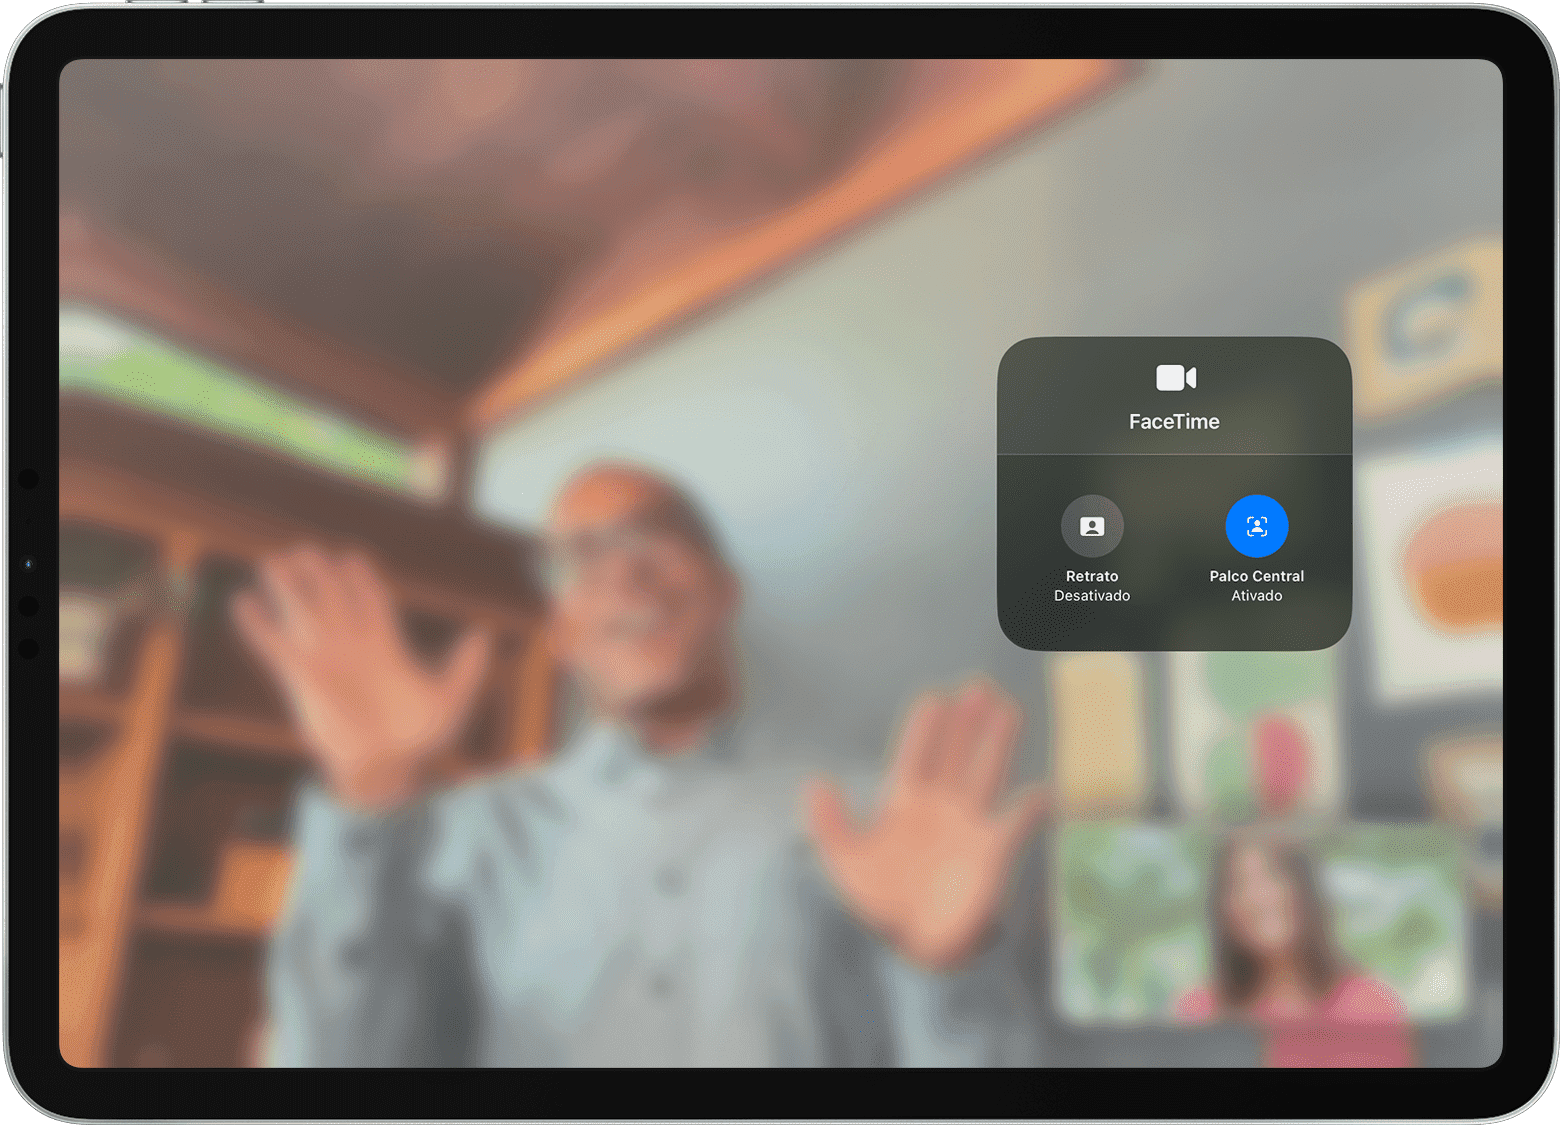 A tela do iPad mostra uma ligação do FaceTime com as opções de "Efeitos de Vídeo" visíveis